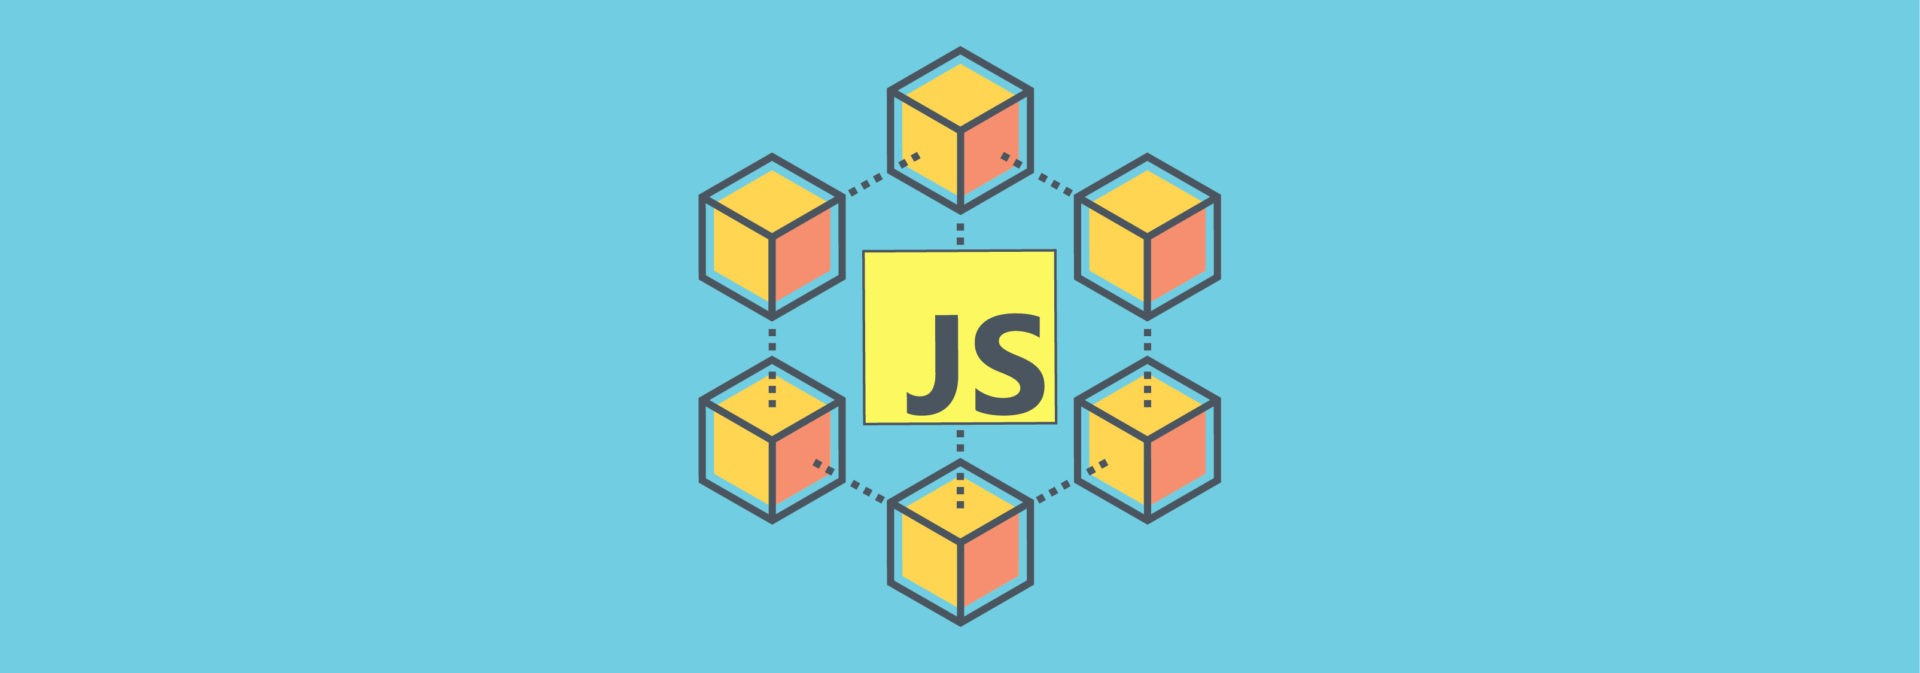 Блокчейн за 200 строк кода: пример простой реализации на JavaScript